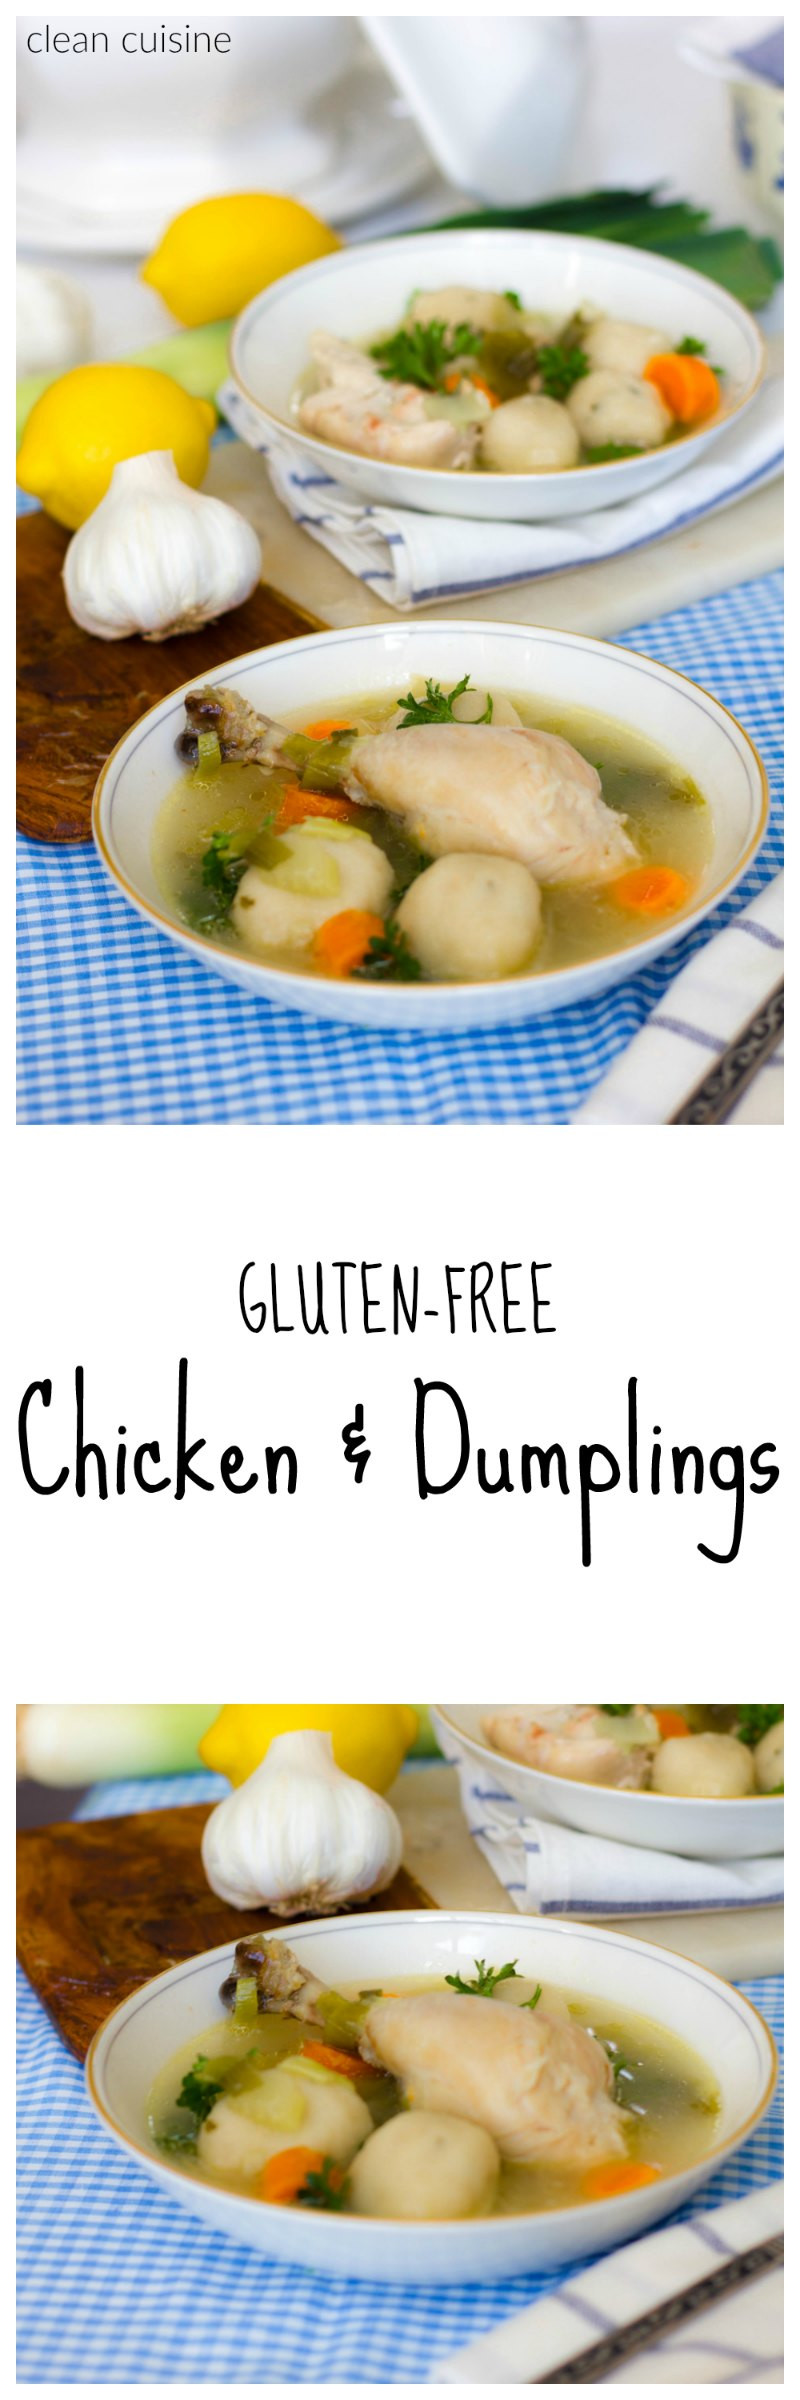 Dumplings Gluten Free
 Recipe for the Best Gluten Free Chicken and Dumplings